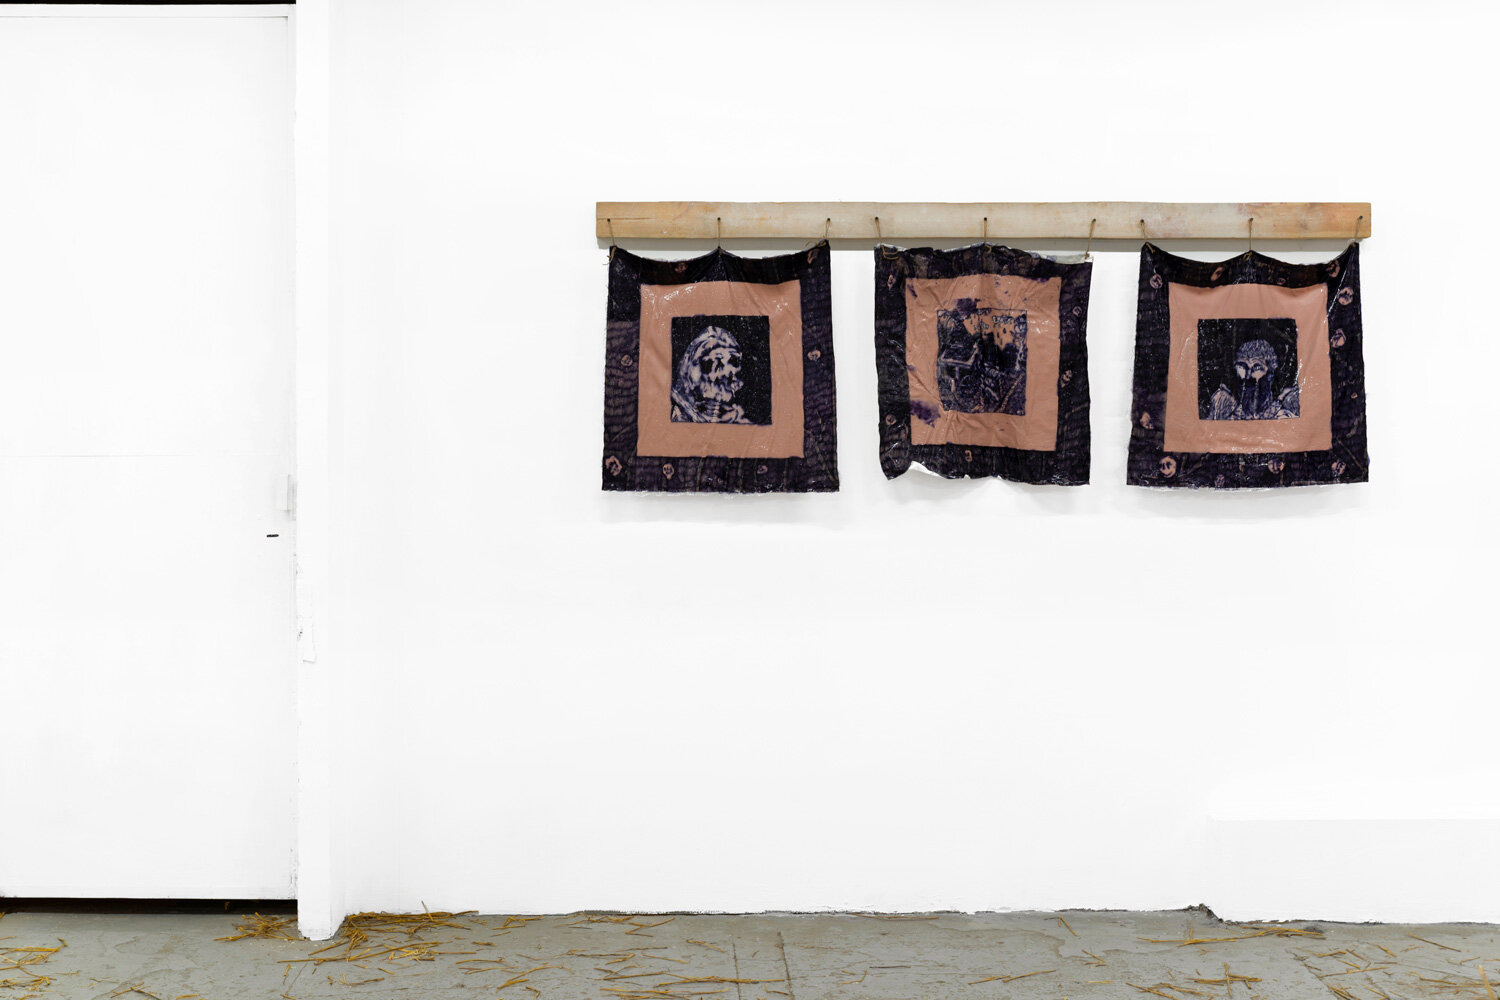  Stas Lobachevskiy, triptych "Yelling death", 2019  